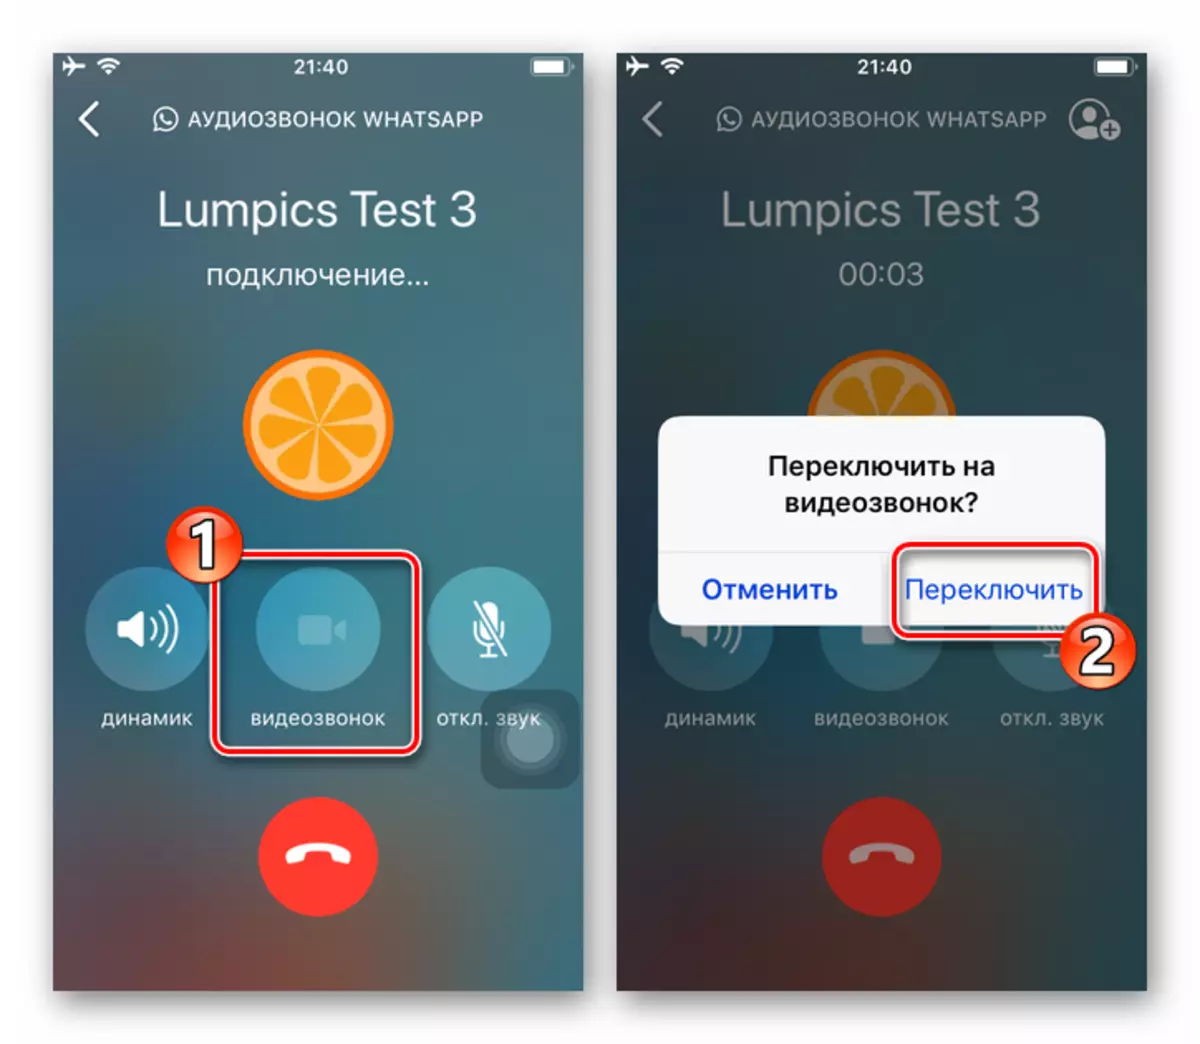 iOS 용 WhatsApp 음성 통화 과정에서 비디오 통신으로 전환